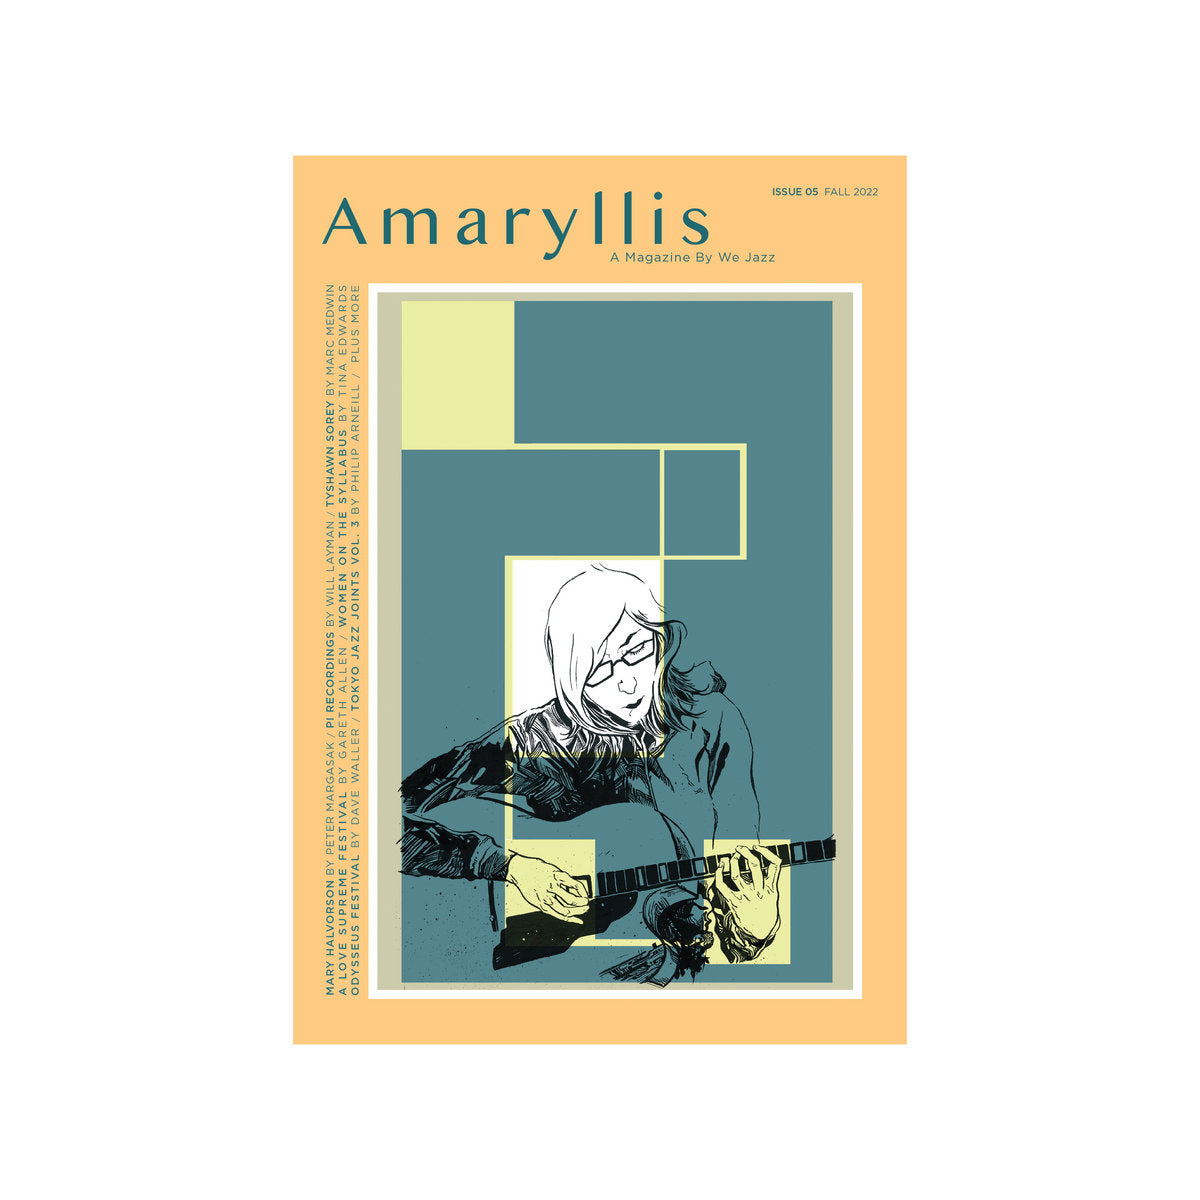 We Jazz Magazine Issue 5 - "Amaryllis"